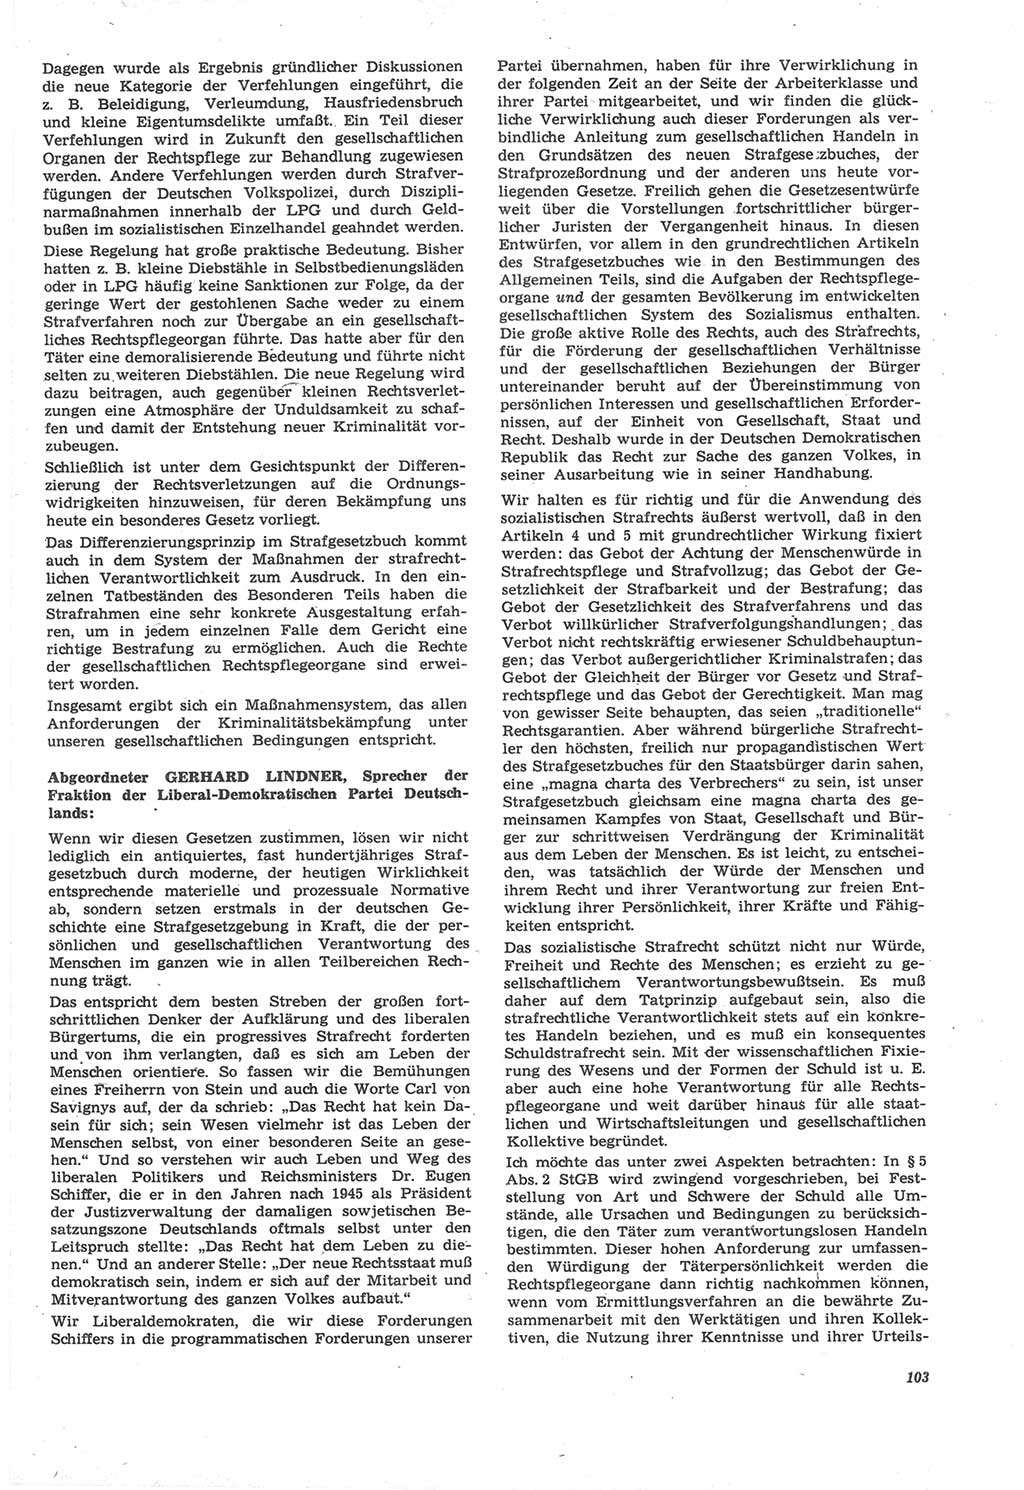 Neue Justiz (NJ), Zeitschrift für Recht und Rechtswissenschaft [Deutsche Demokratische Republik (DDR)], 22. Jahrgang 1968, Seite 103 (NJ DDR 1968, S. 103)